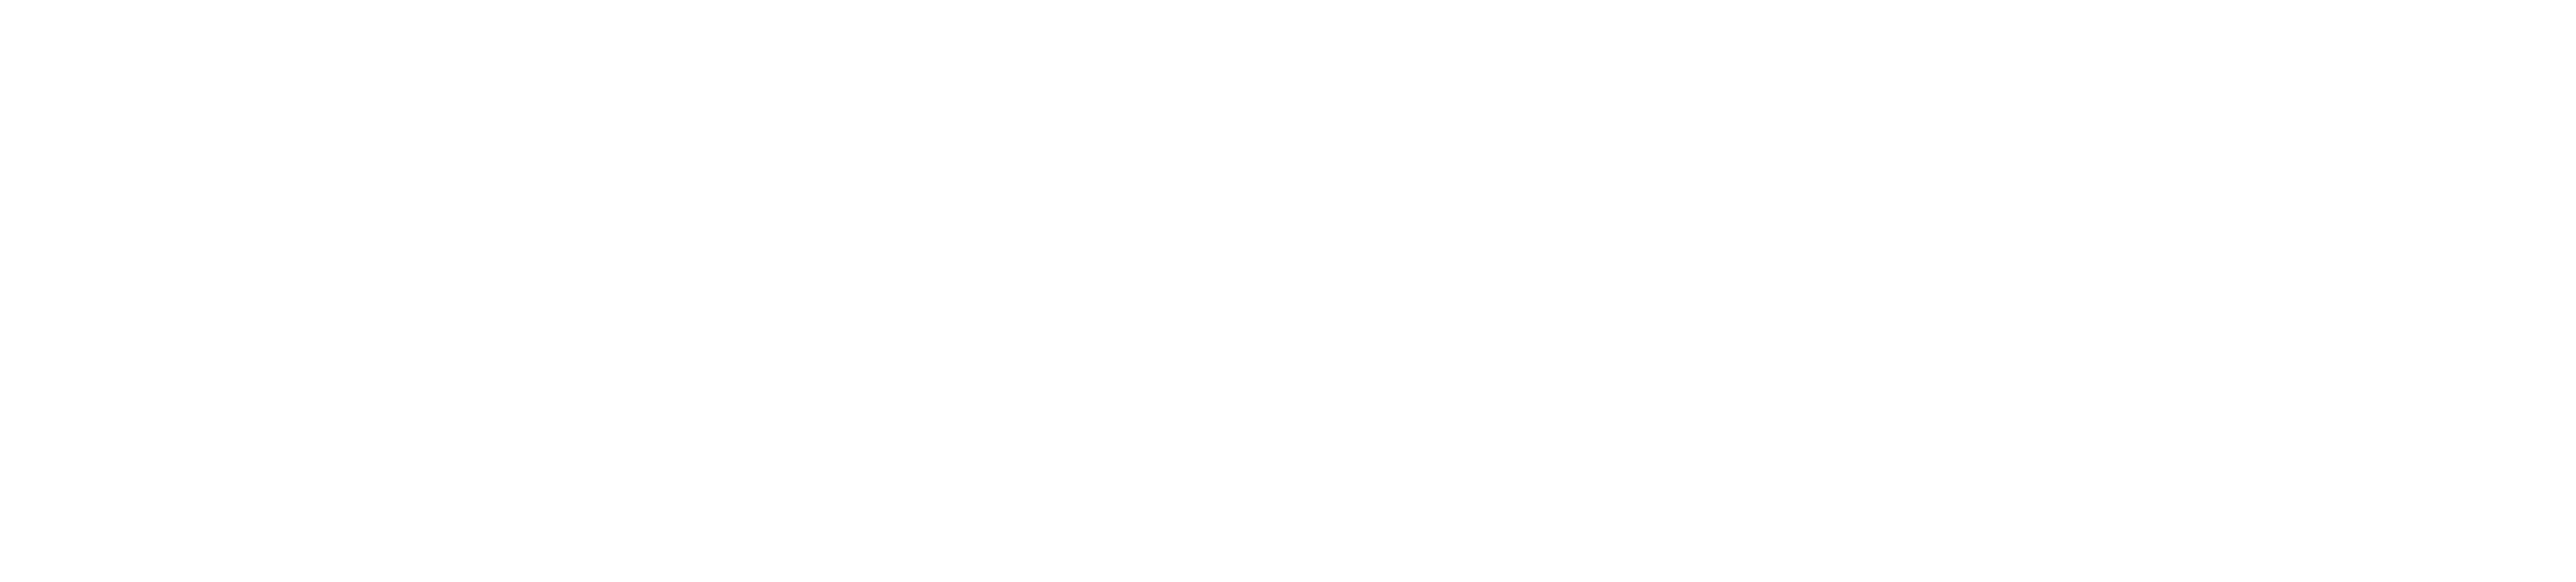 NZXT Logo - NZXT Support Center